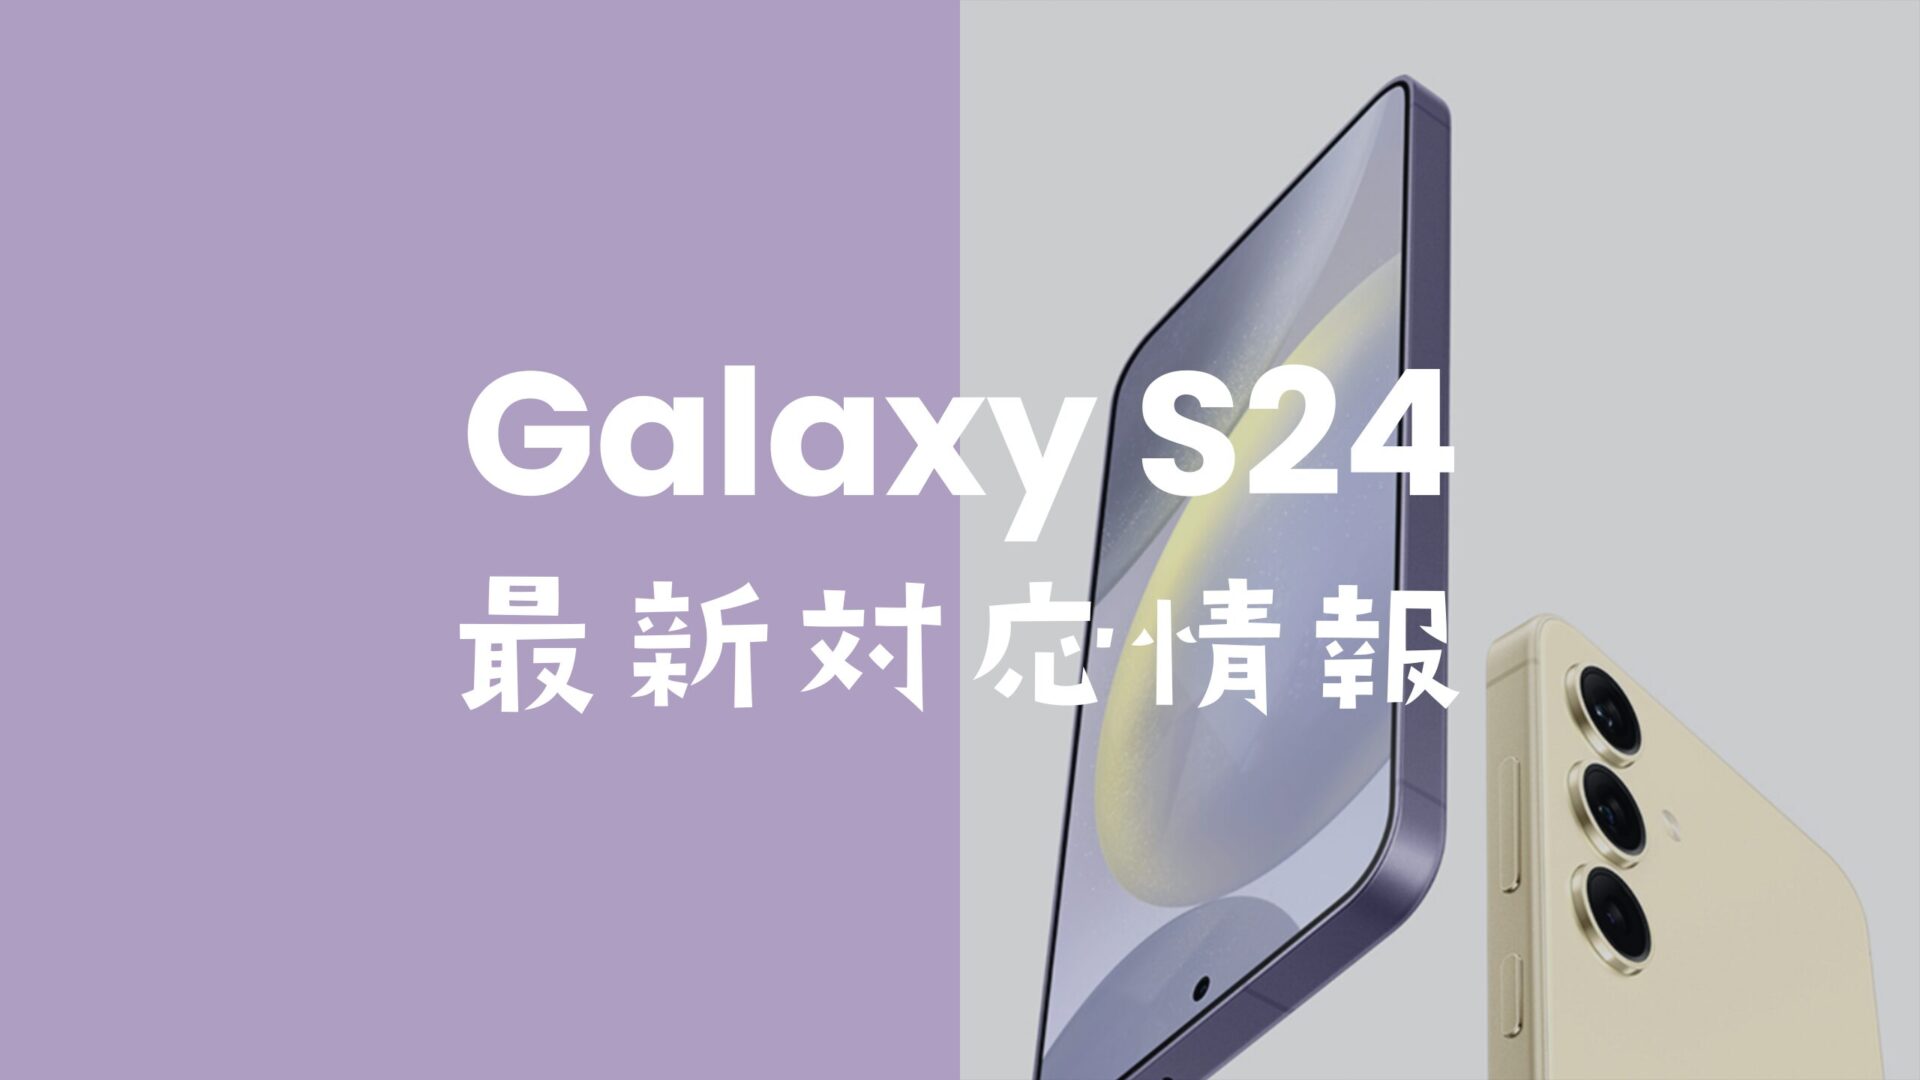 Galaxy S24やS24+はSIMフリーで発売。キャリア版(ドコモやau等)もSIMロック無し。のサムネイル画像